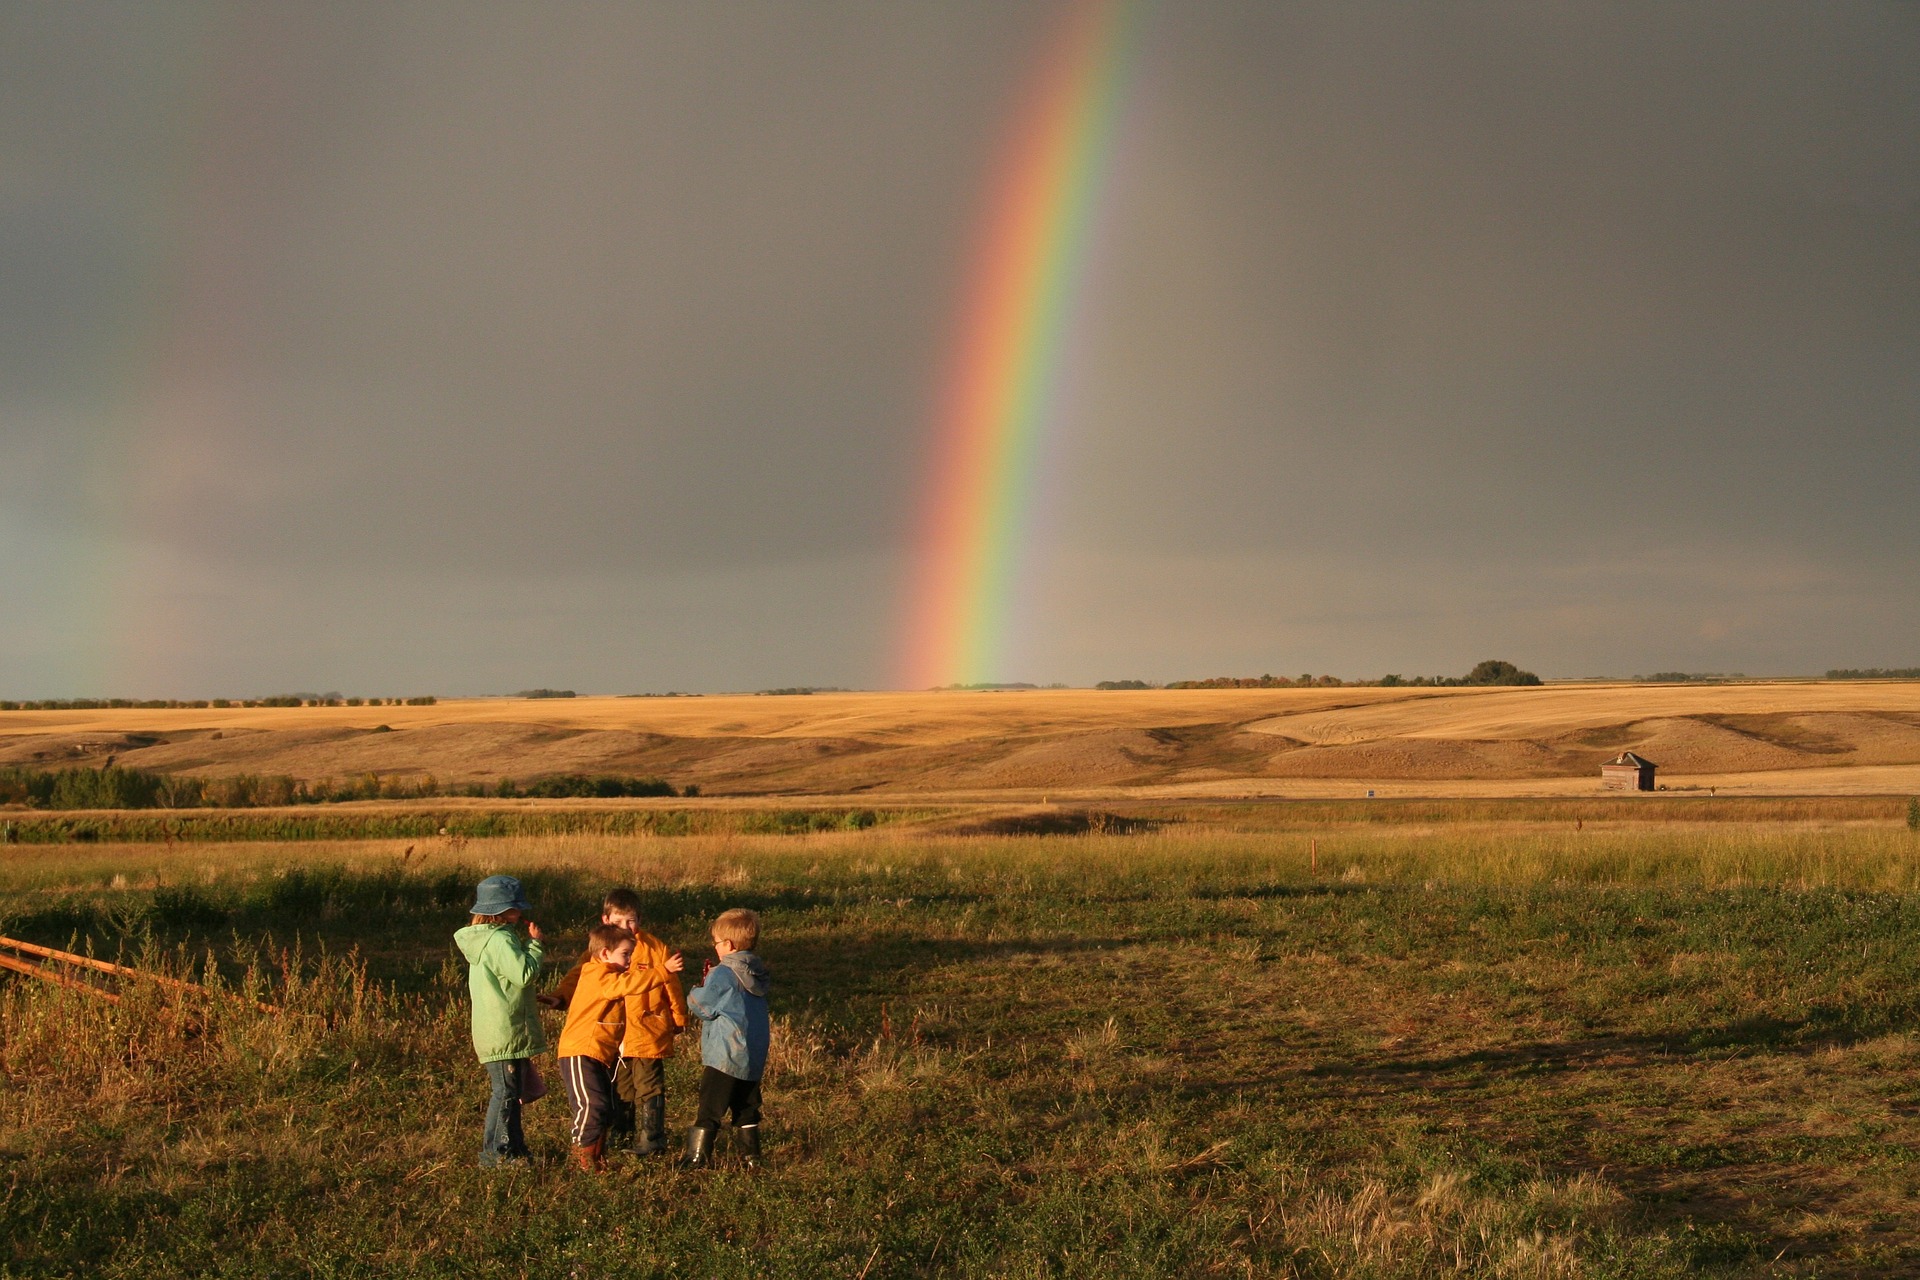 se mira un paisaje con un grupo de niños quienes observan un arcoirirs en el horizonte.